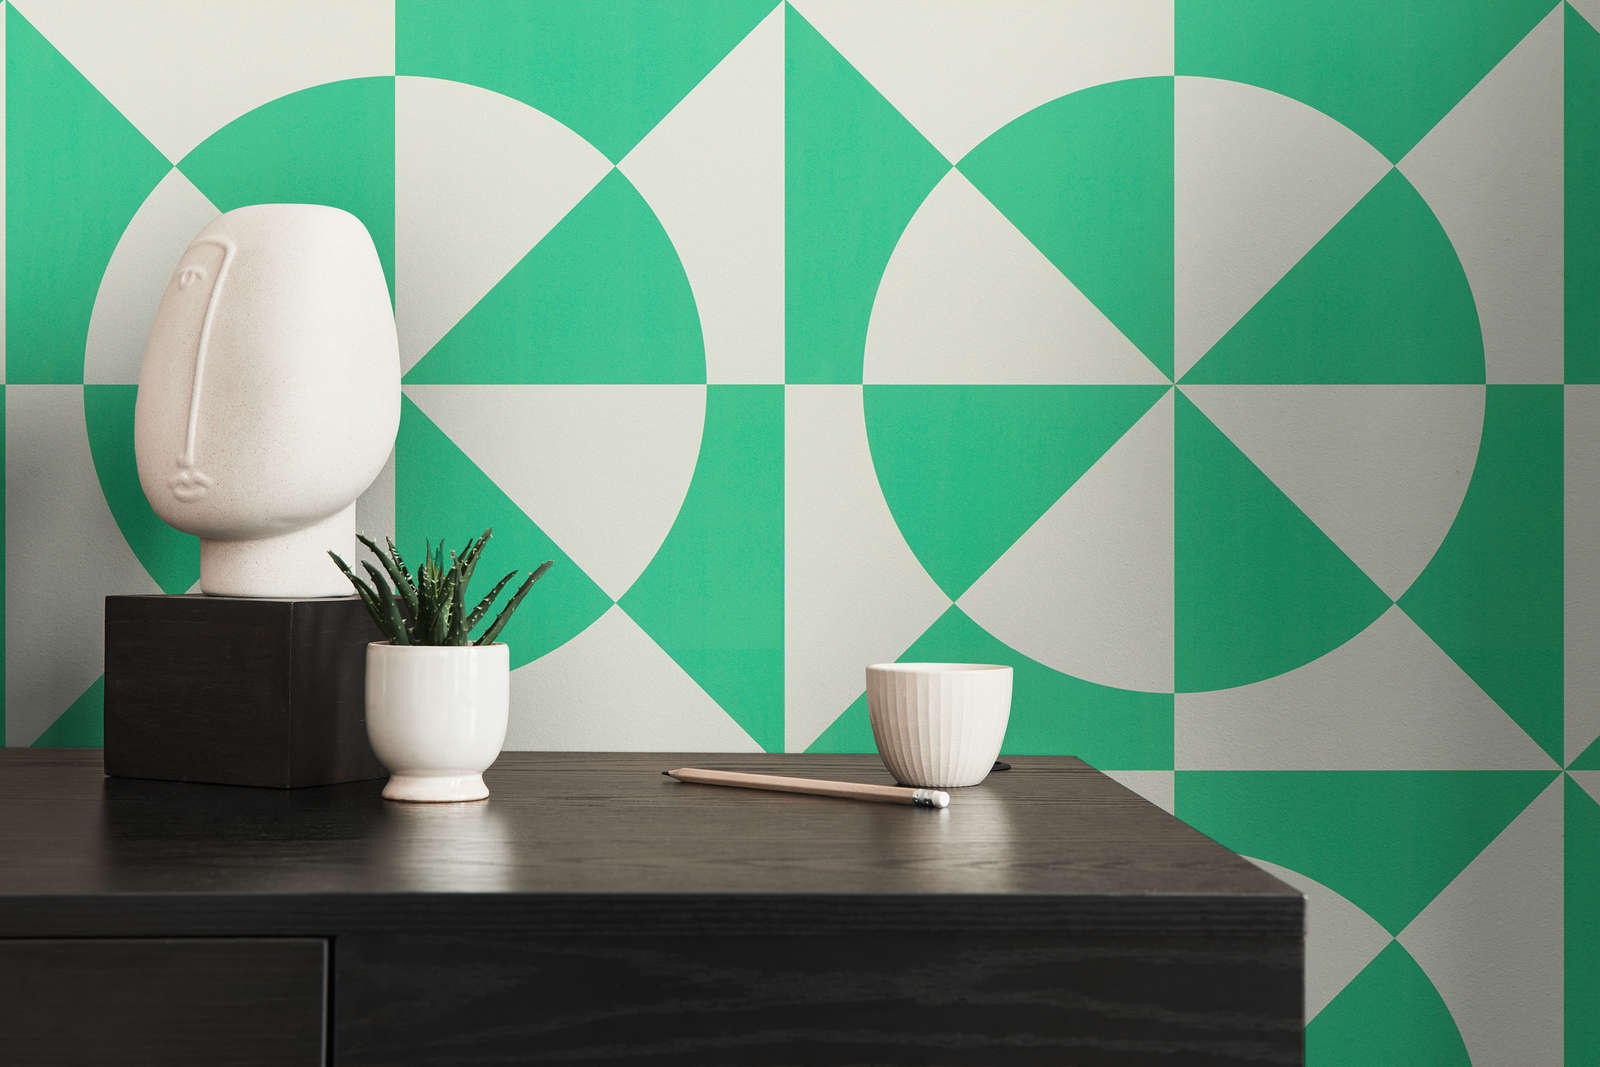             Vliestapete mit geometrischen Formen – Grün, Weiß
        